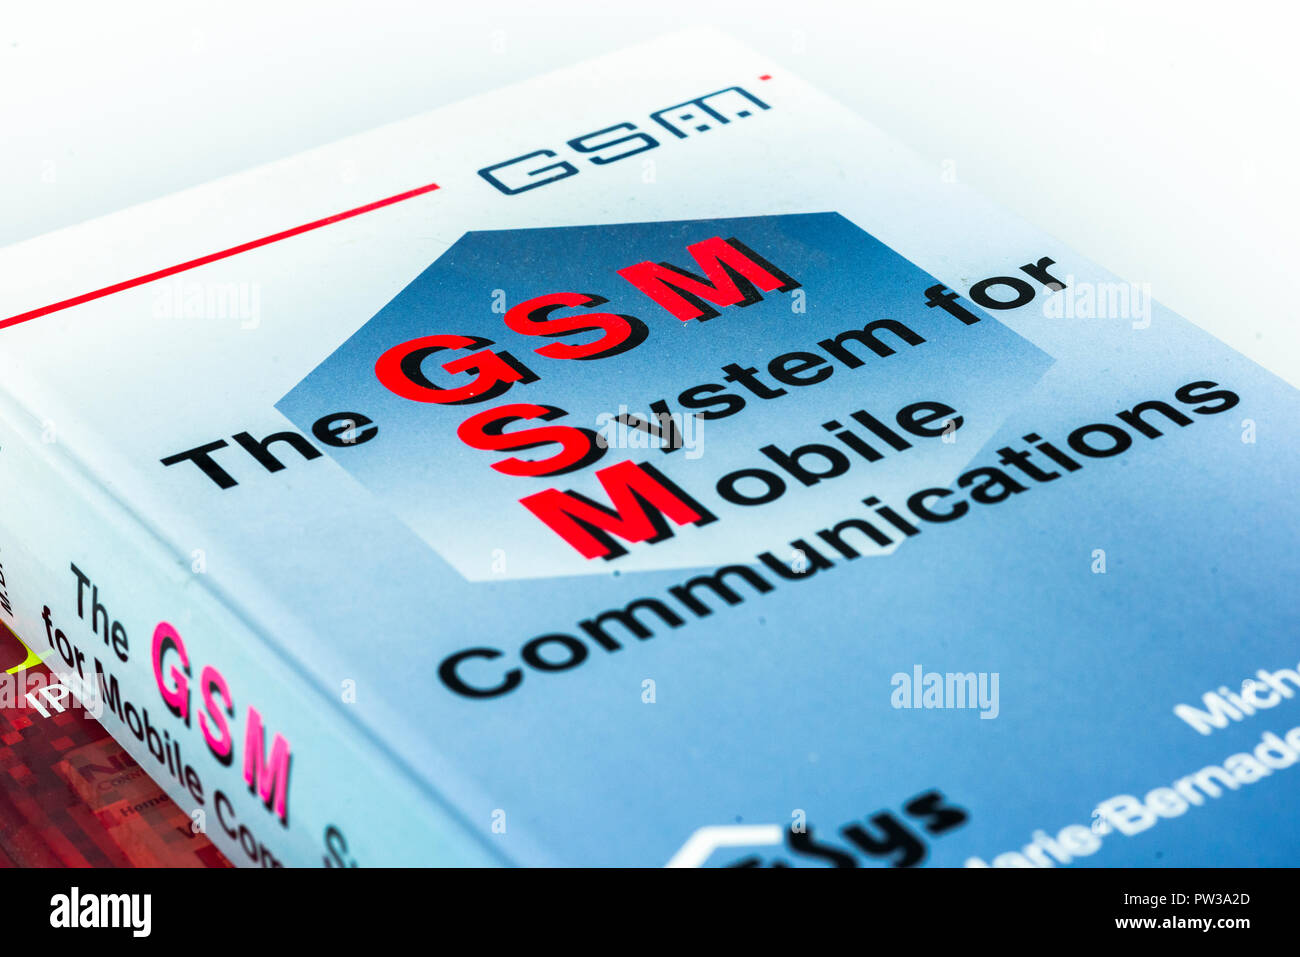 Riferimento tecnico libri sulle tecnologie di telefonia mobile GSM di copertura e di IMS Foto Stock